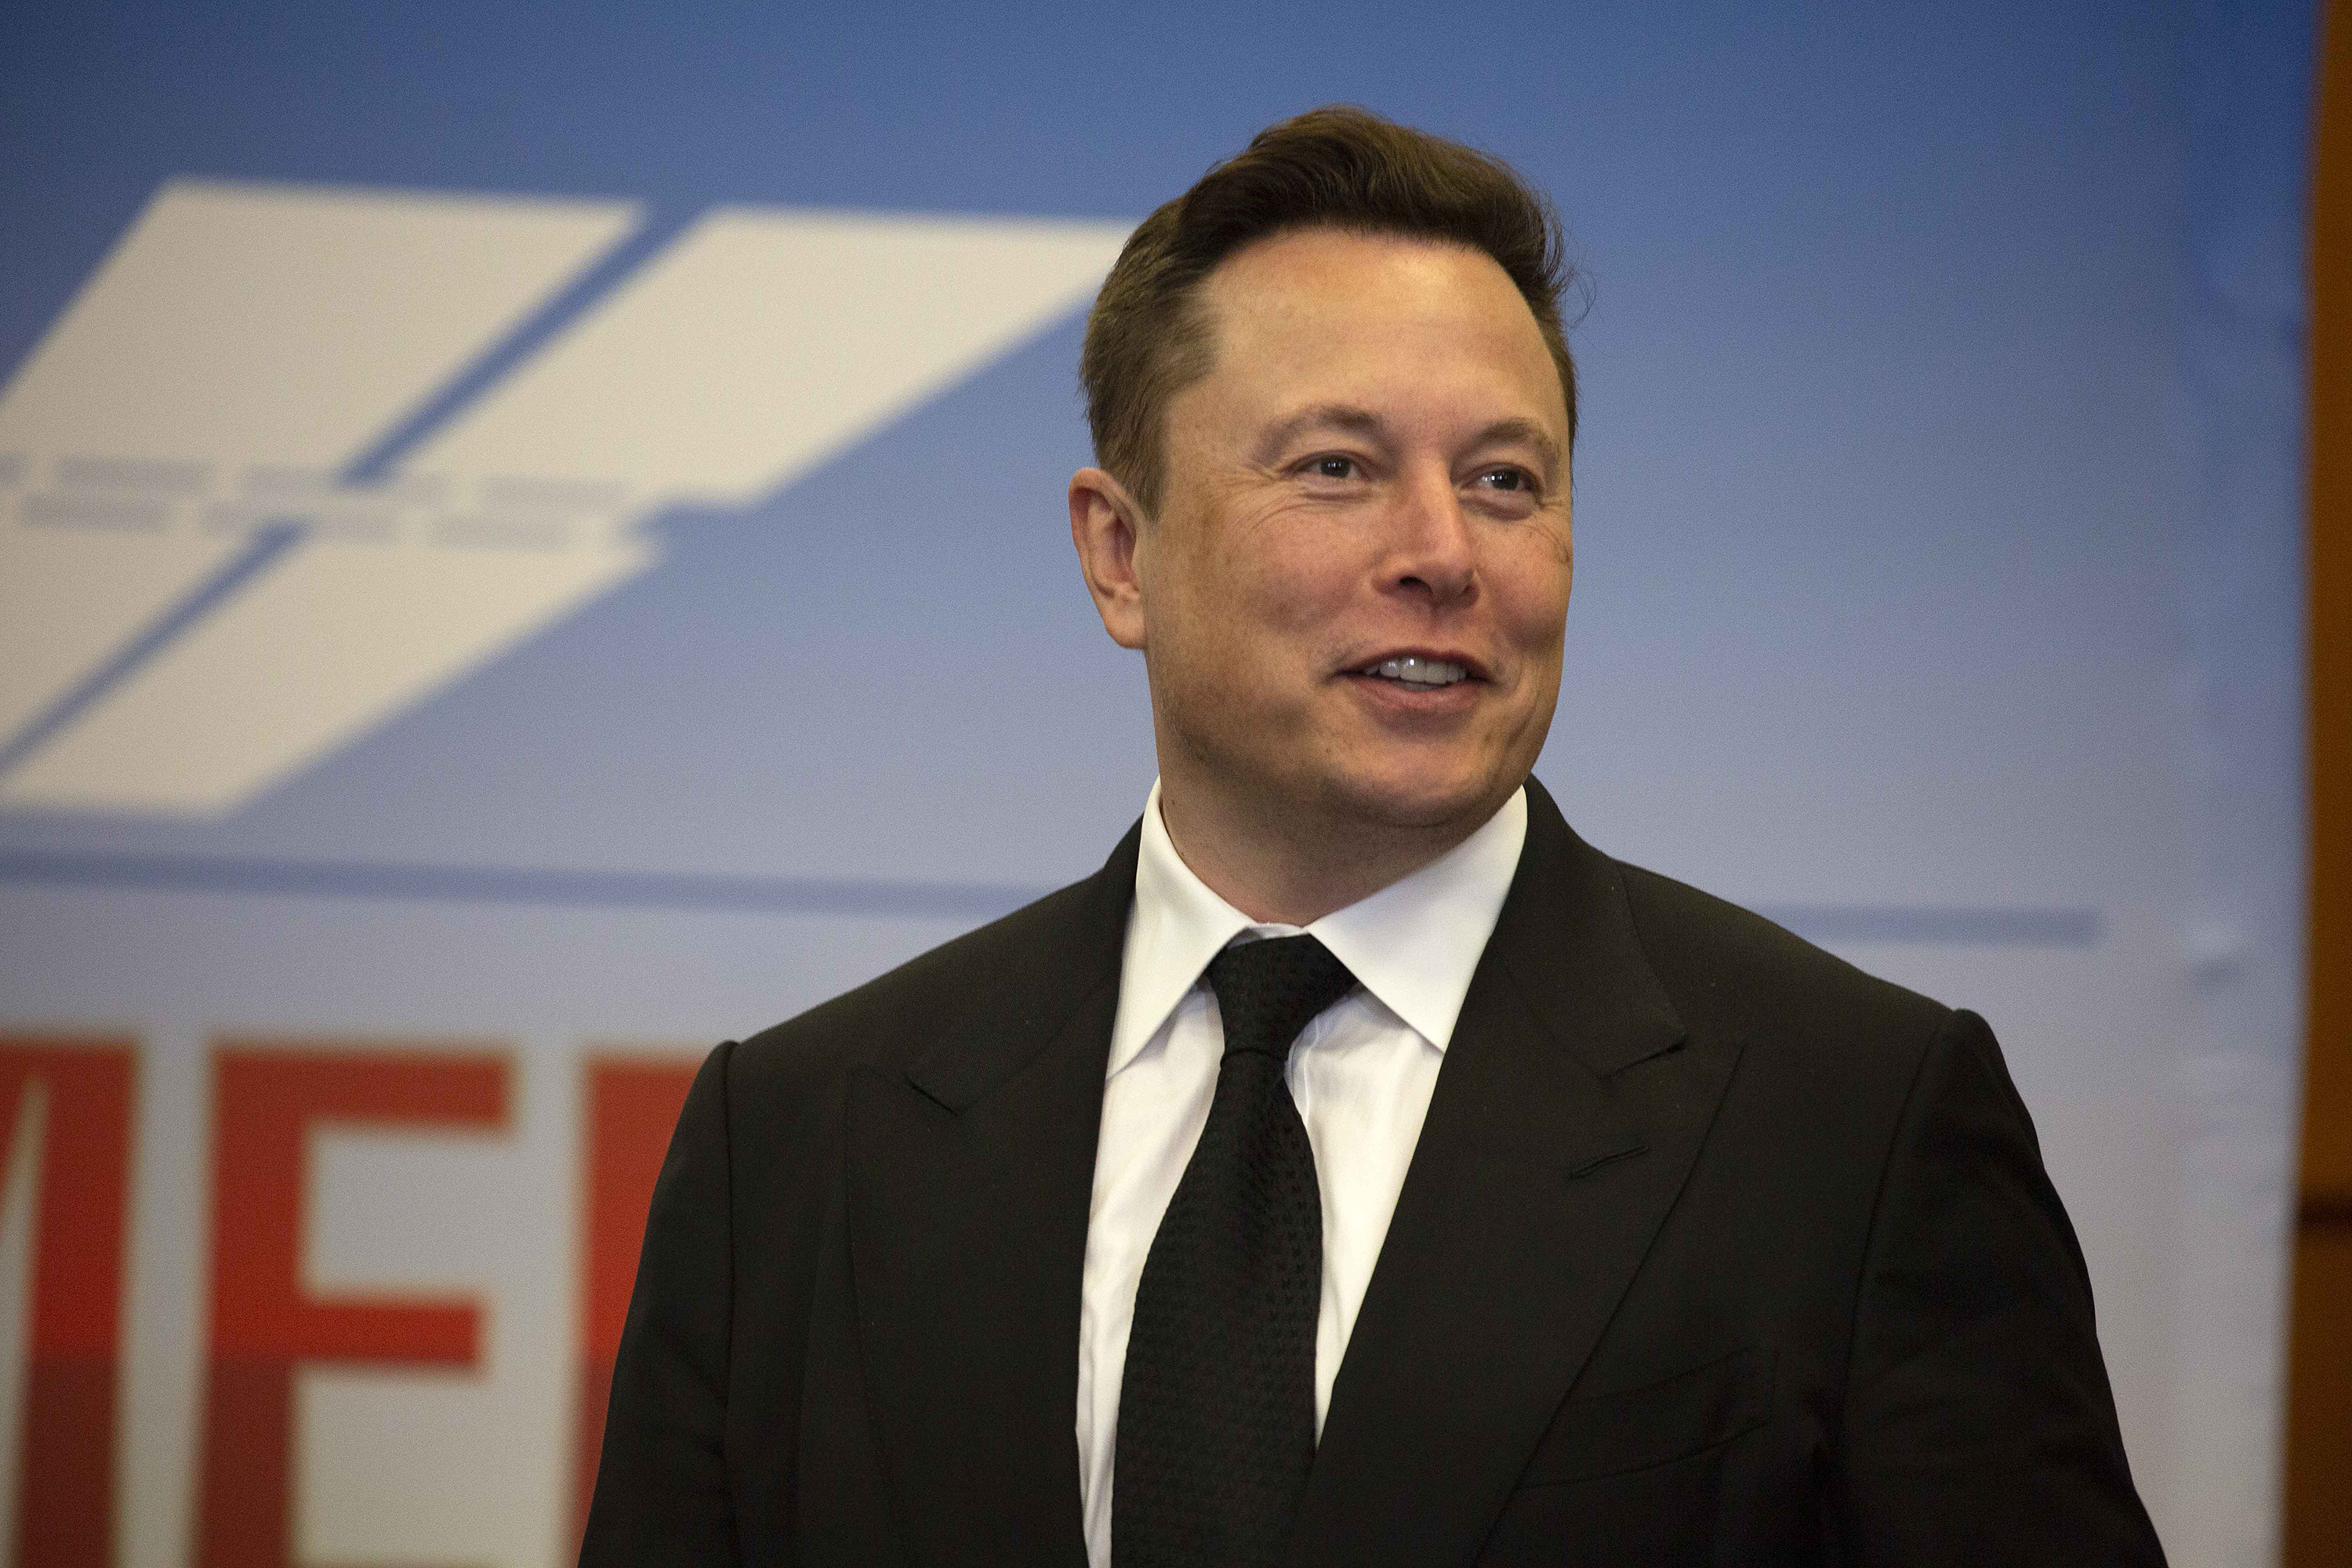 Elon Musk Calls the UN’s Bluff to Open a Pandora’s Box